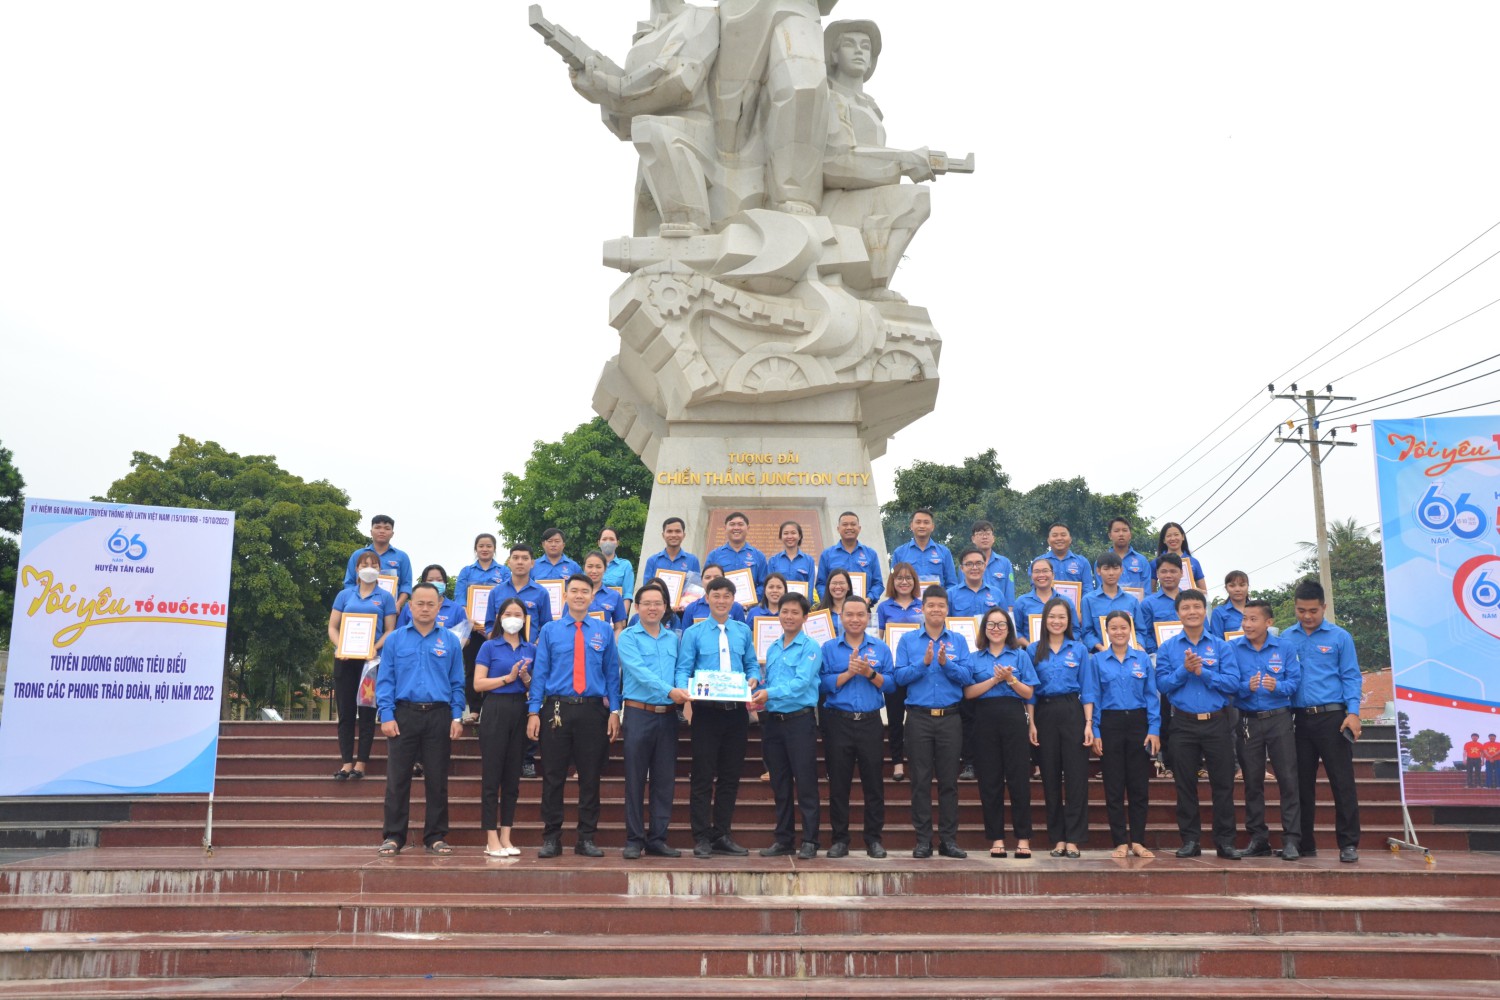 Huyện đoàn Tân Châu tổ chức chương trình kỷ niệm 66 năm ngày truyền thống Hội Liên hiệp thanh niên Việt Nam